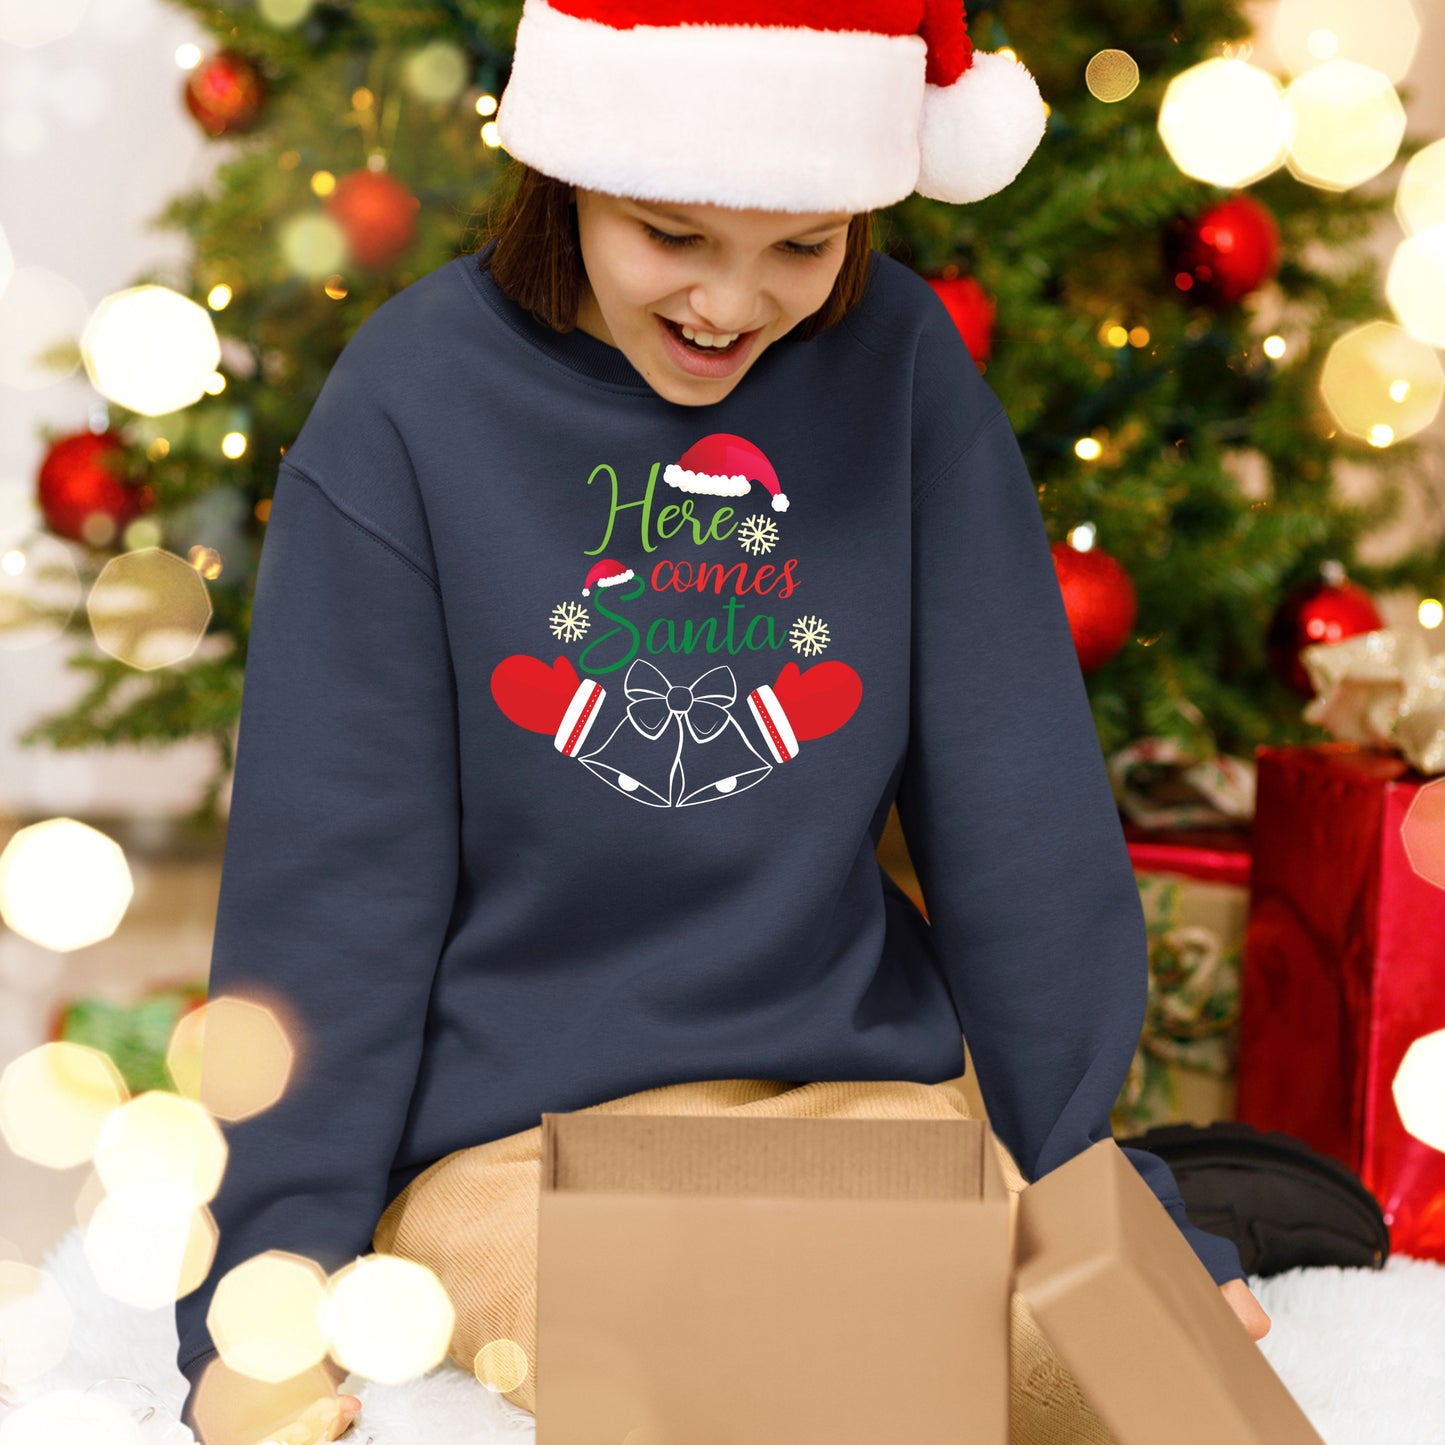 Here Comes Santa, Christmas Sweatshirt, Christmas Long Sleeves, Christmas Crewneck For Youth, Christmas Sweater, Christmas Present